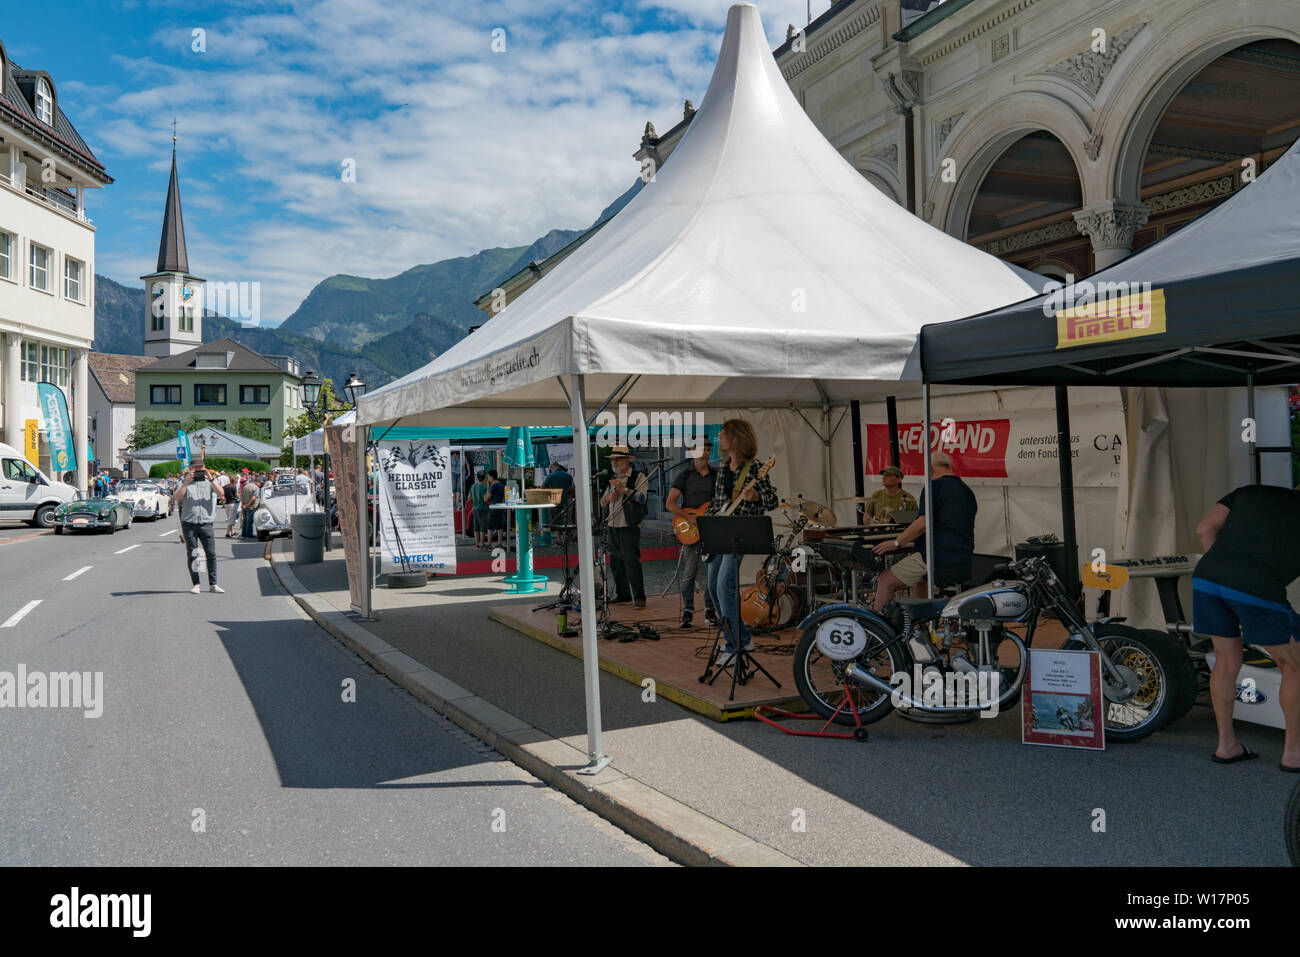 Bad Ragaz, SG / Suisse - 23 juin 2019 : les personnes bénéficiant de l'Heidi Salon de voitures et de divertissement avec rock band à l'Heidi Classic Banque D'Images